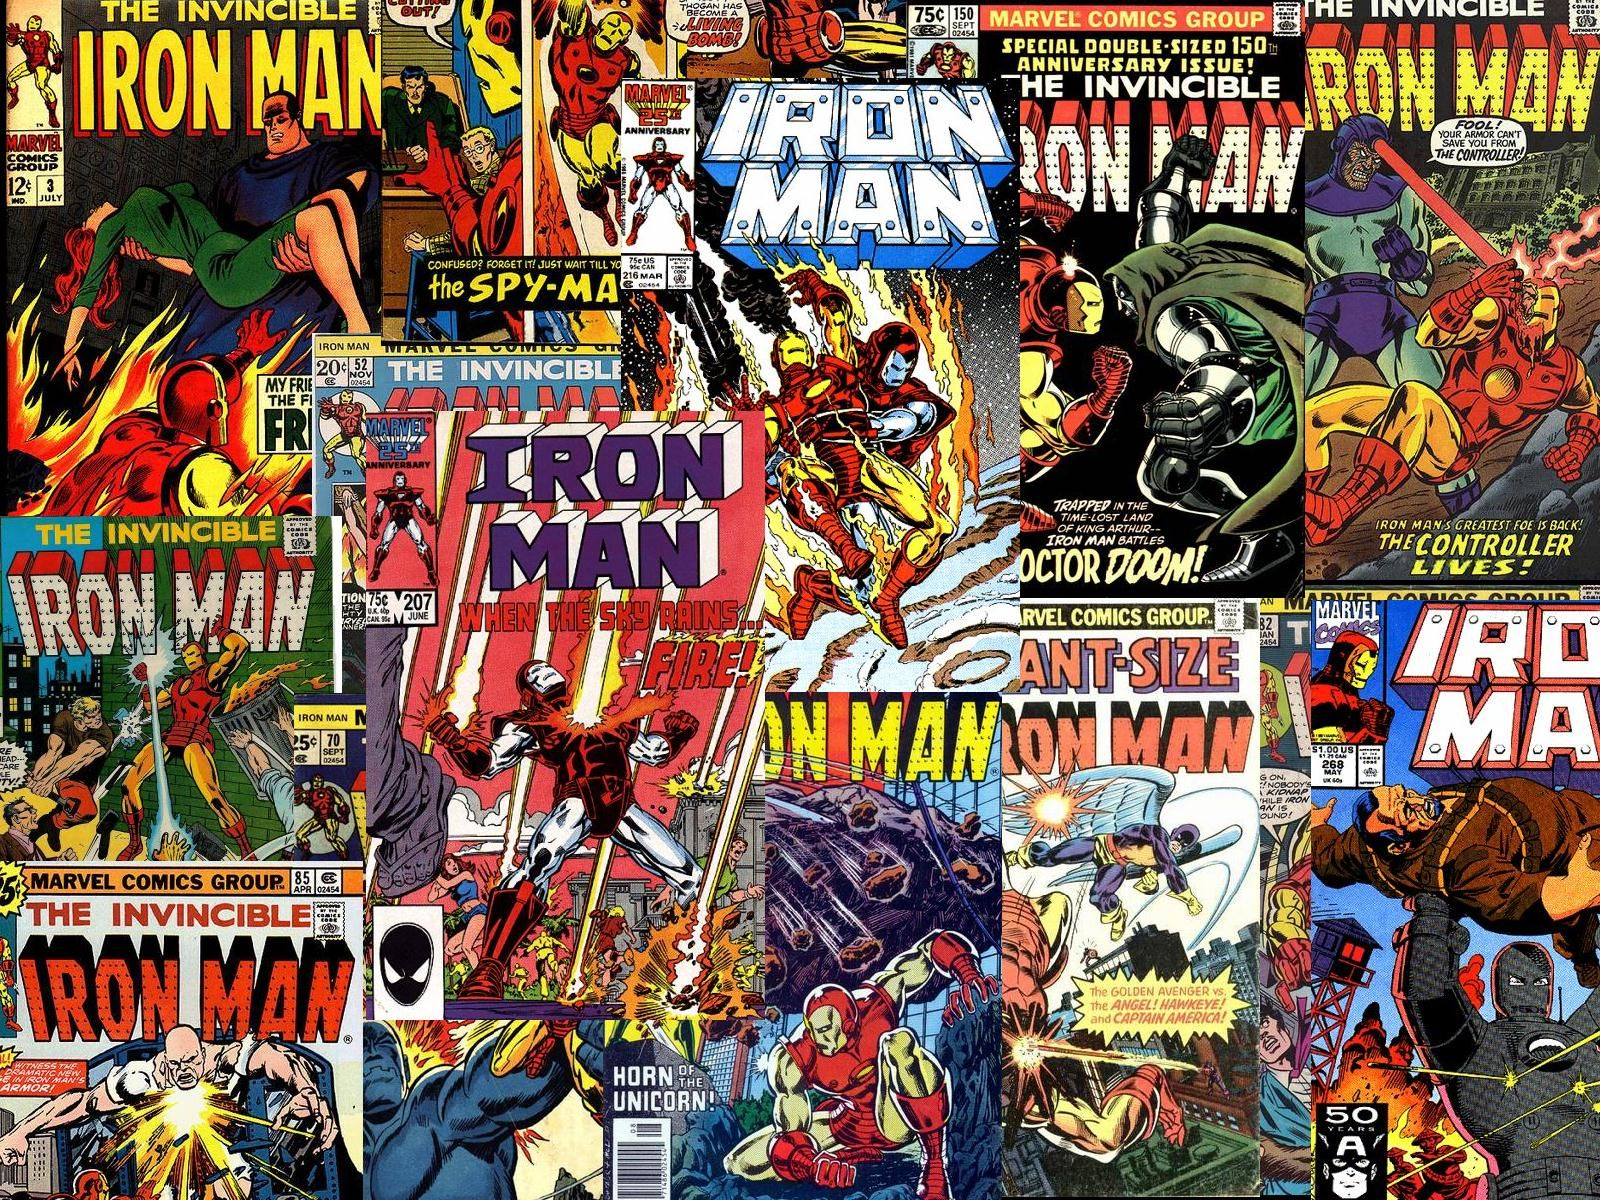 fond d'écran de bande dessinée,des bandes dessinées,bande dessinée,fiction,personnage fictif,super héros